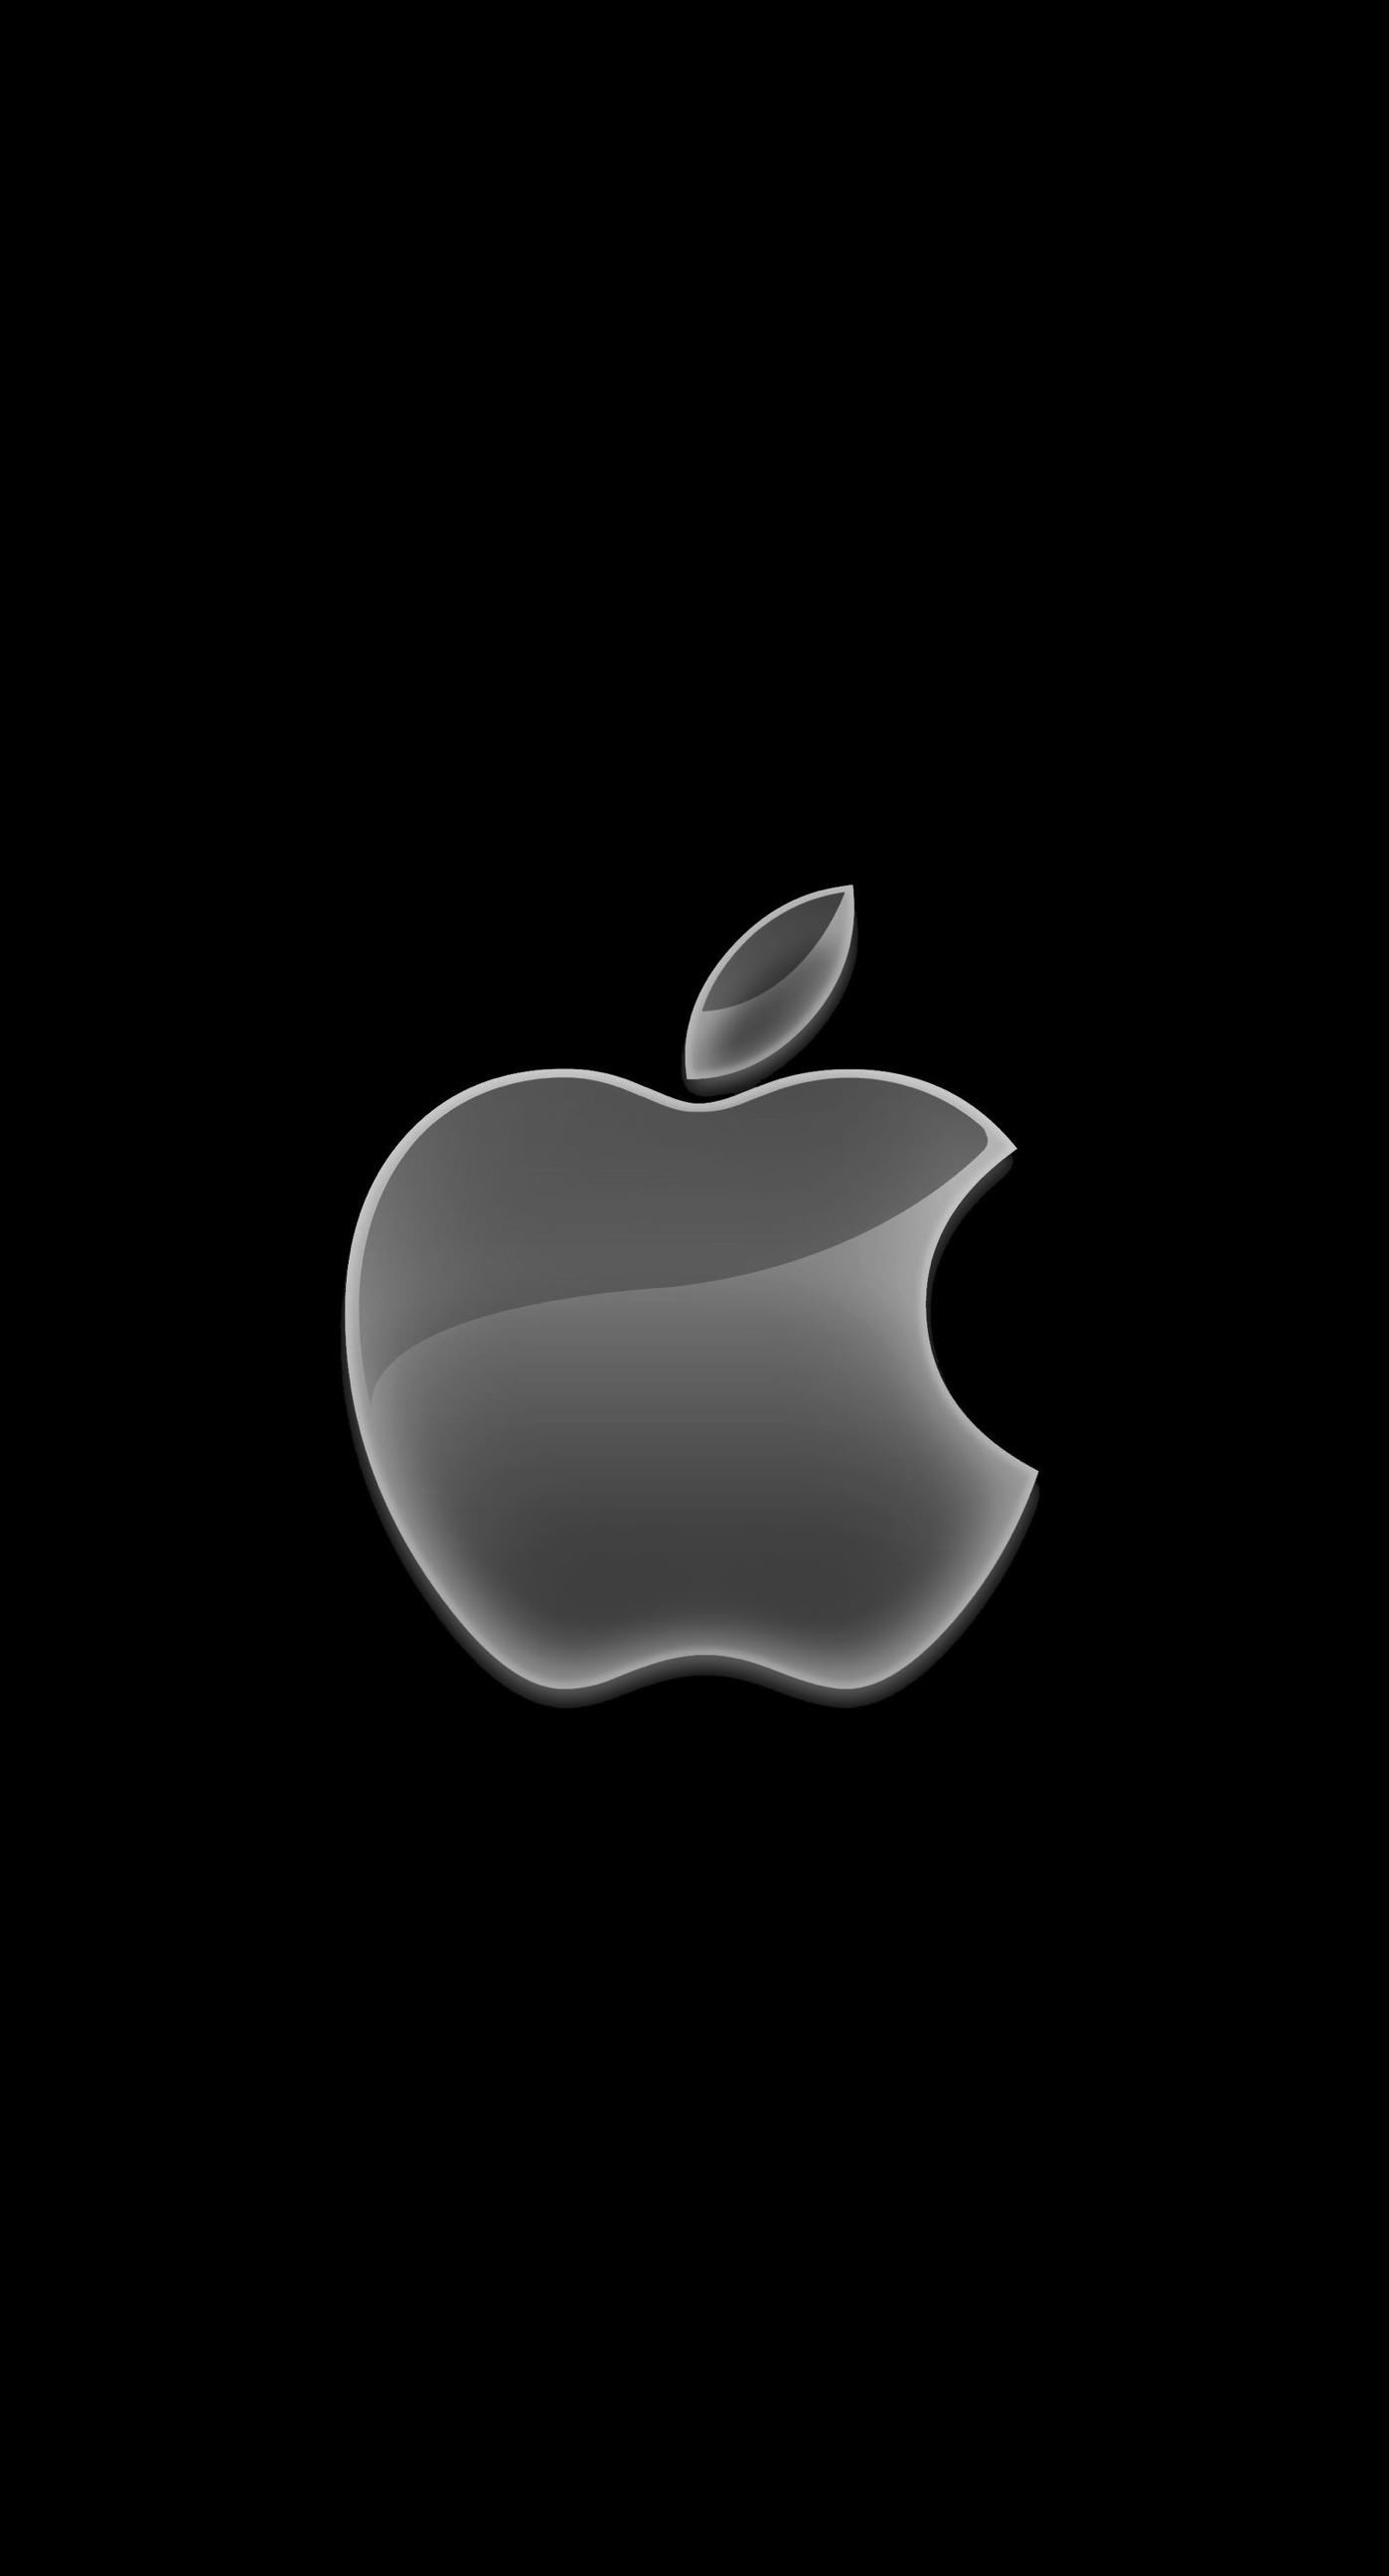 1398x2592 302 best APPLE LOGO images on Pinterest | Apple logo, Apple .